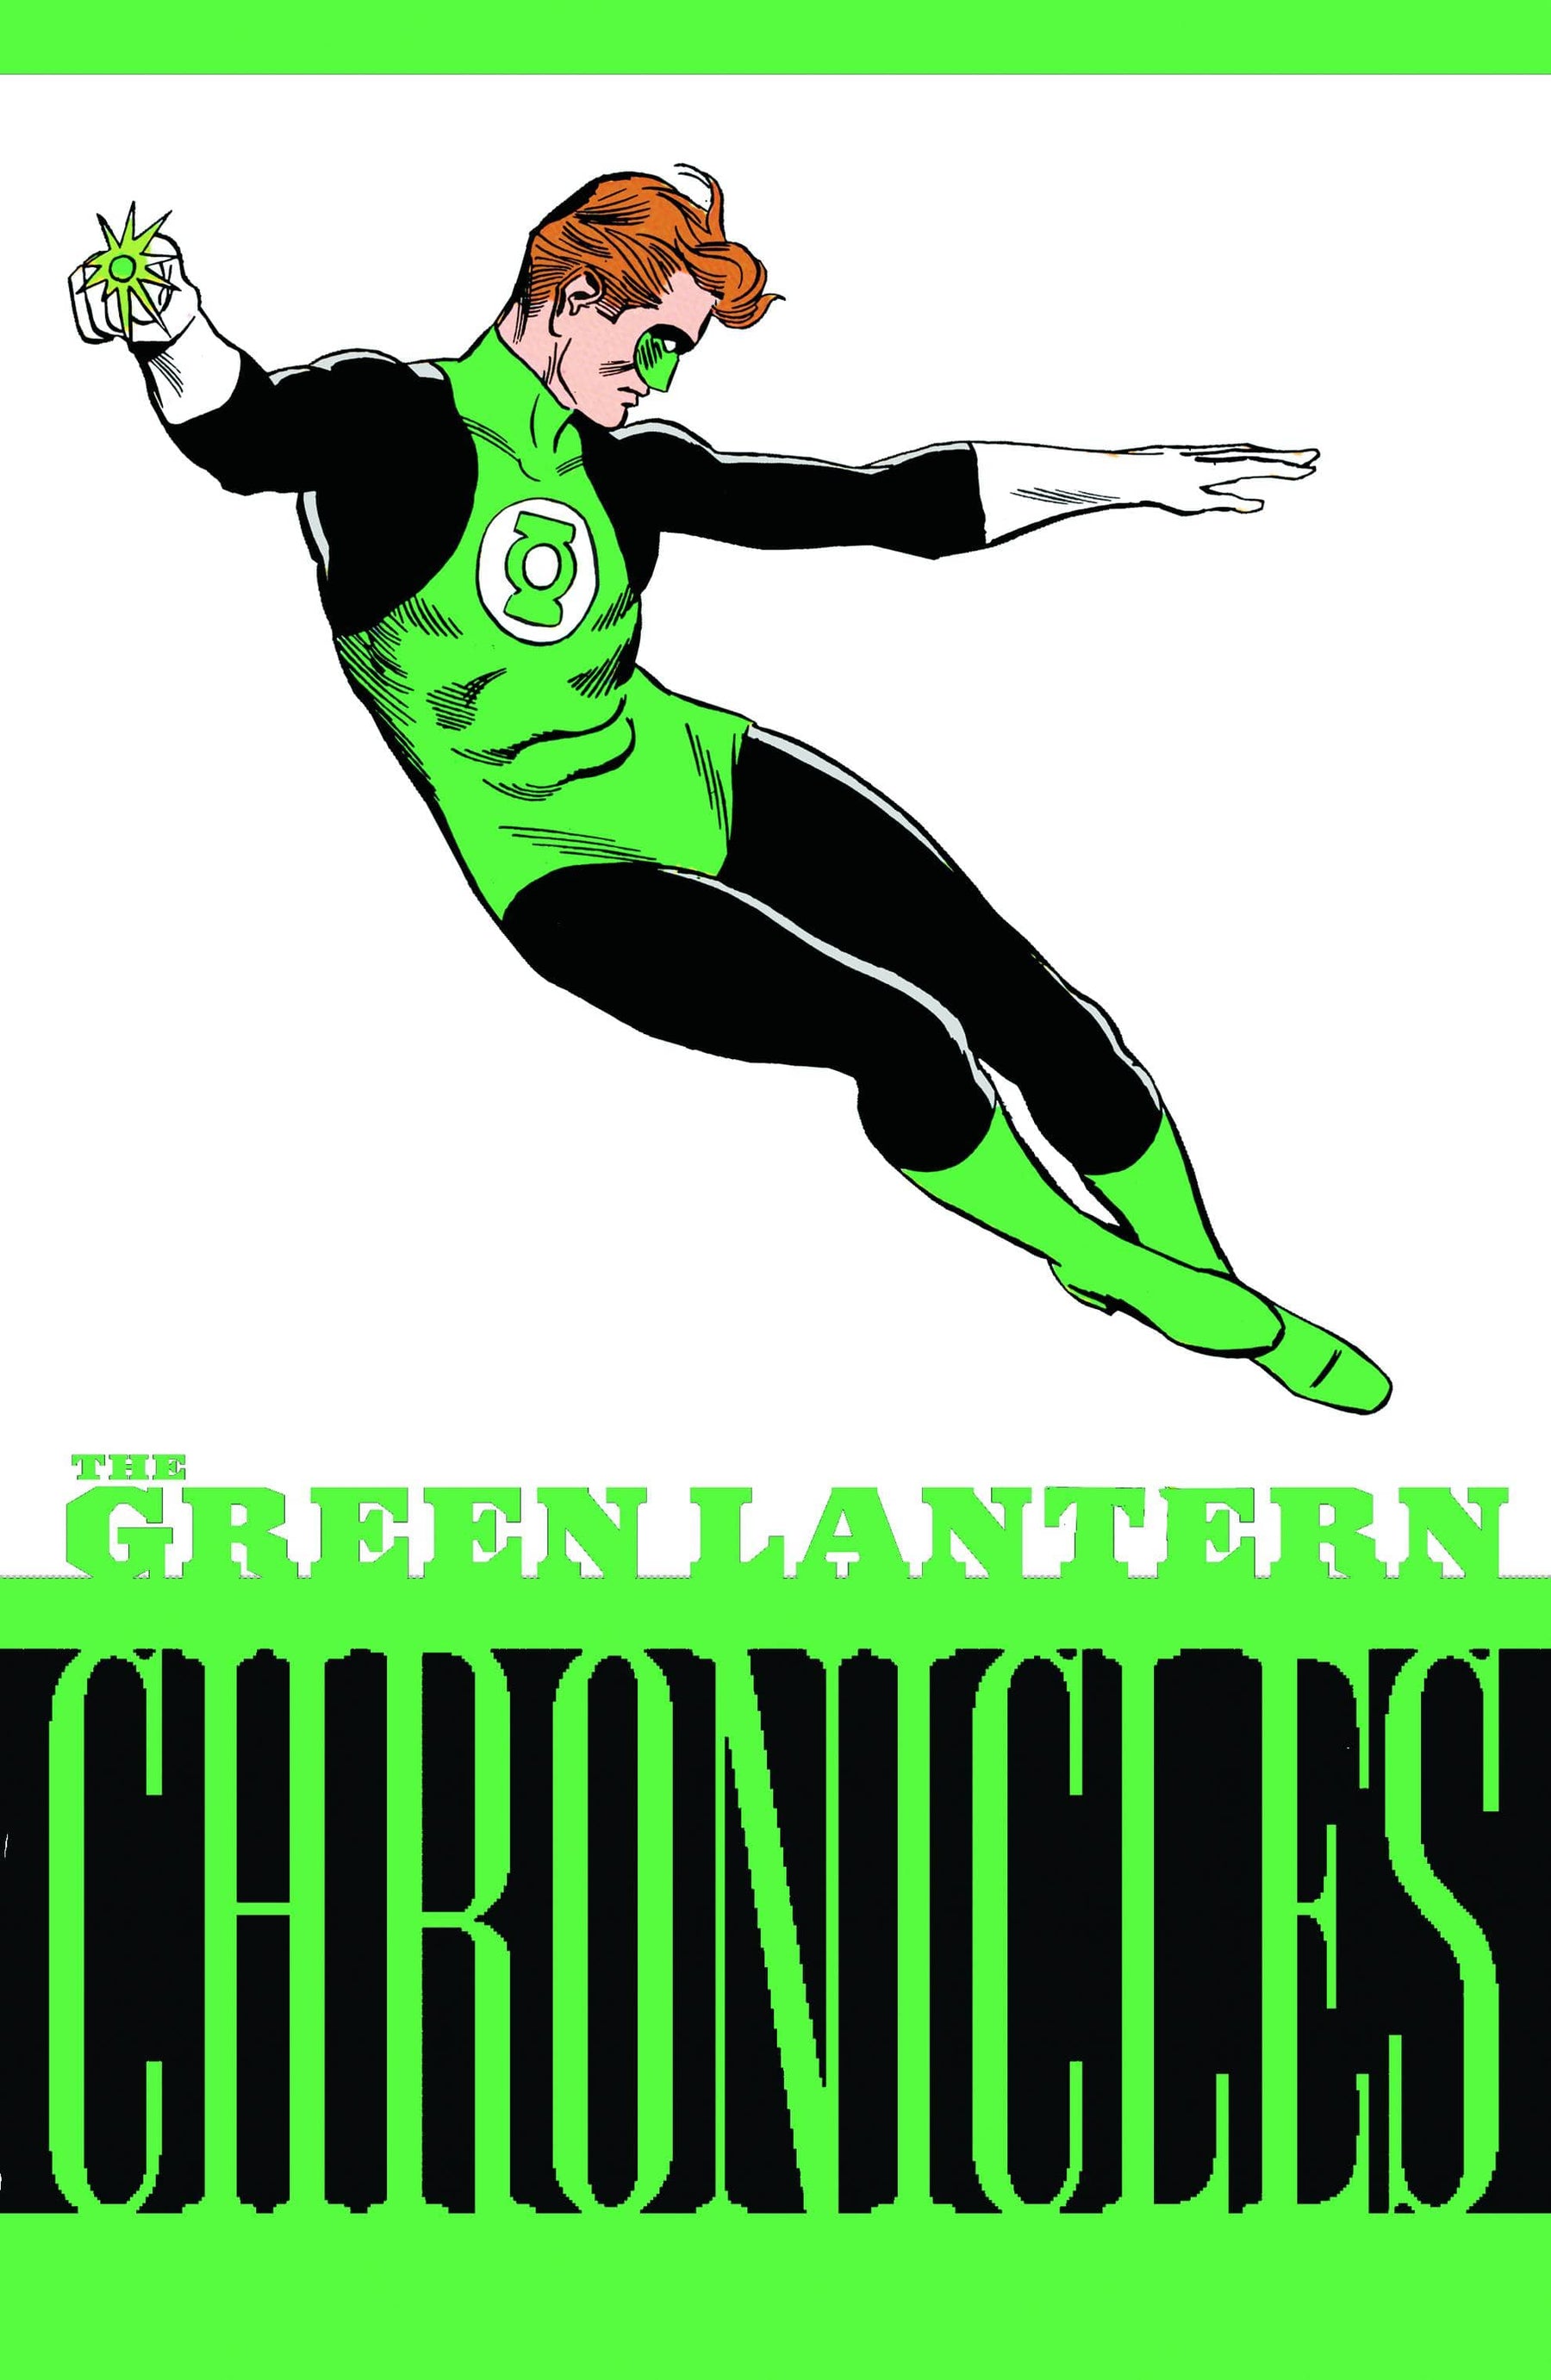 GREEN LANTERN CHRONICLES TP VOL 03 - Third Eye